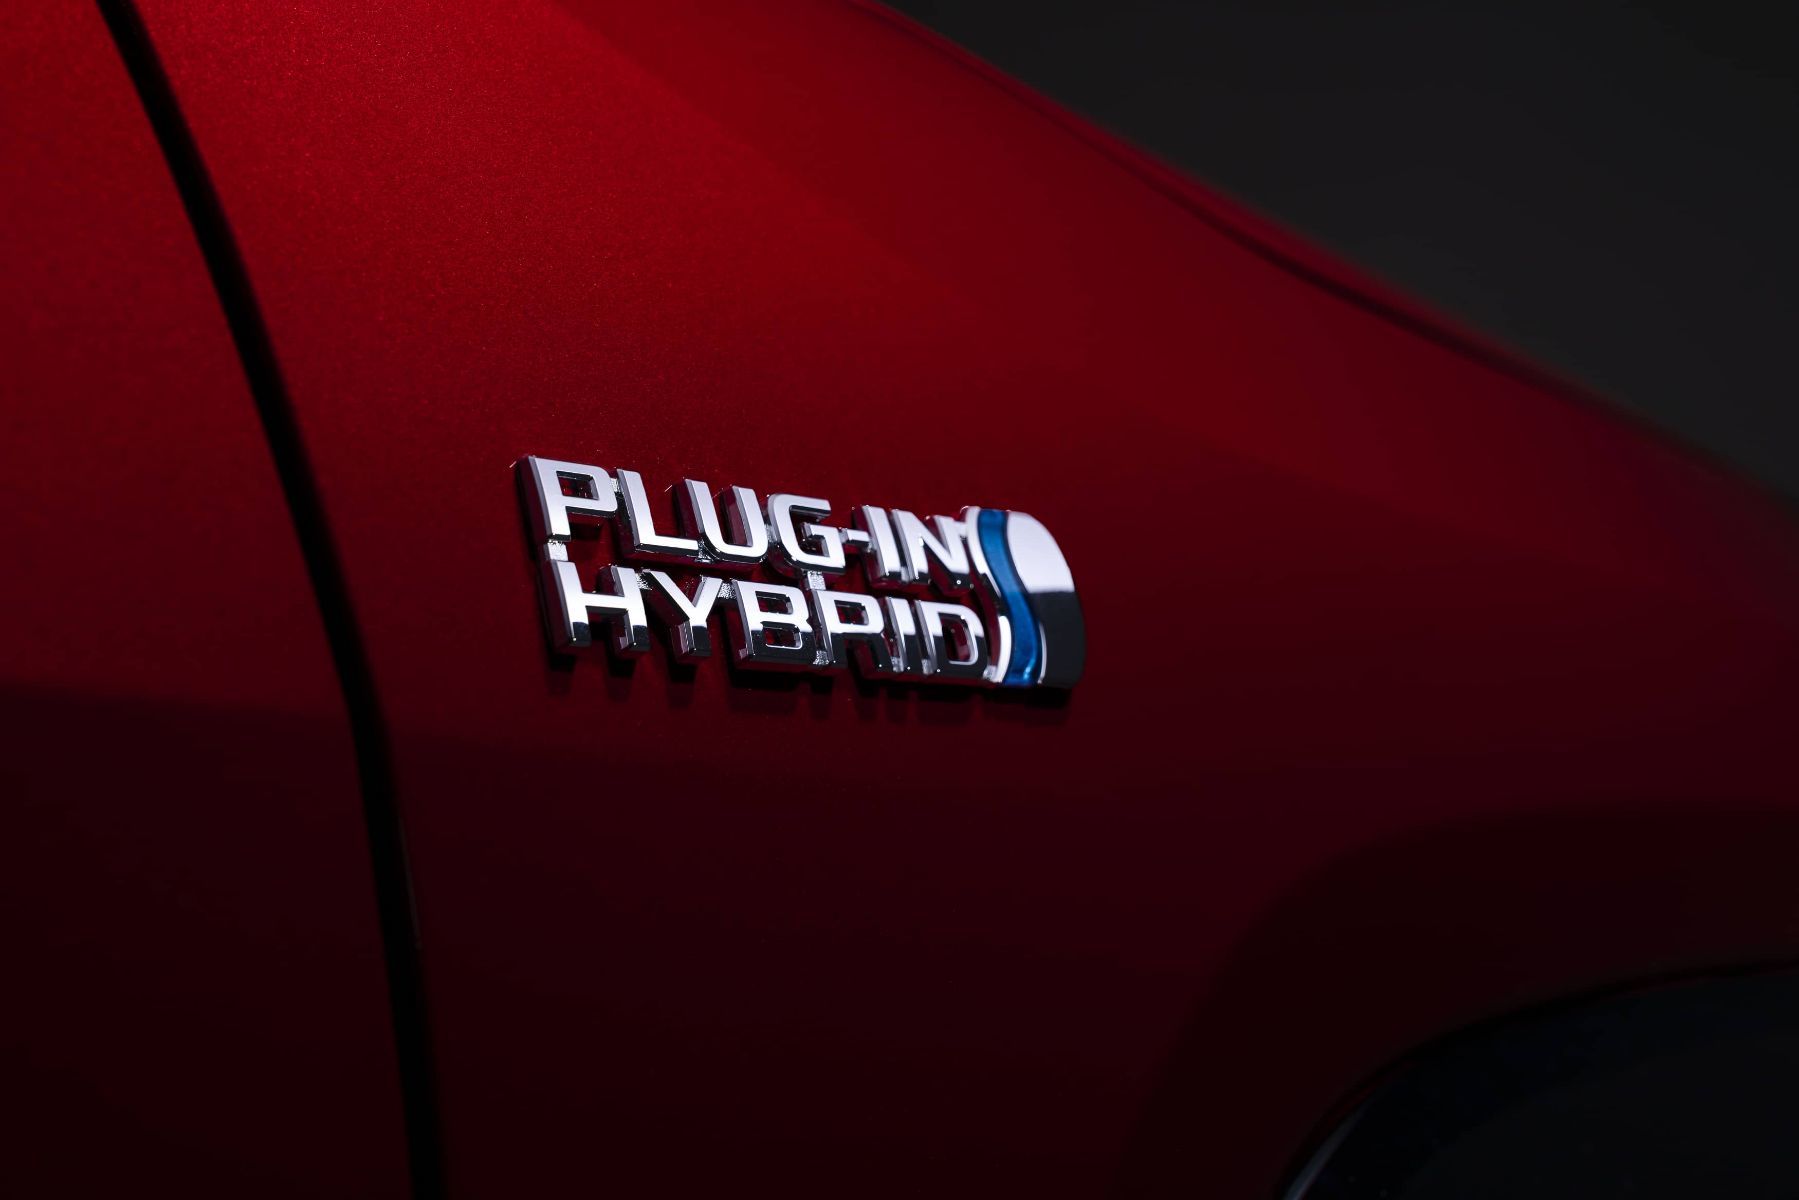 Plug-in hybrid emblem